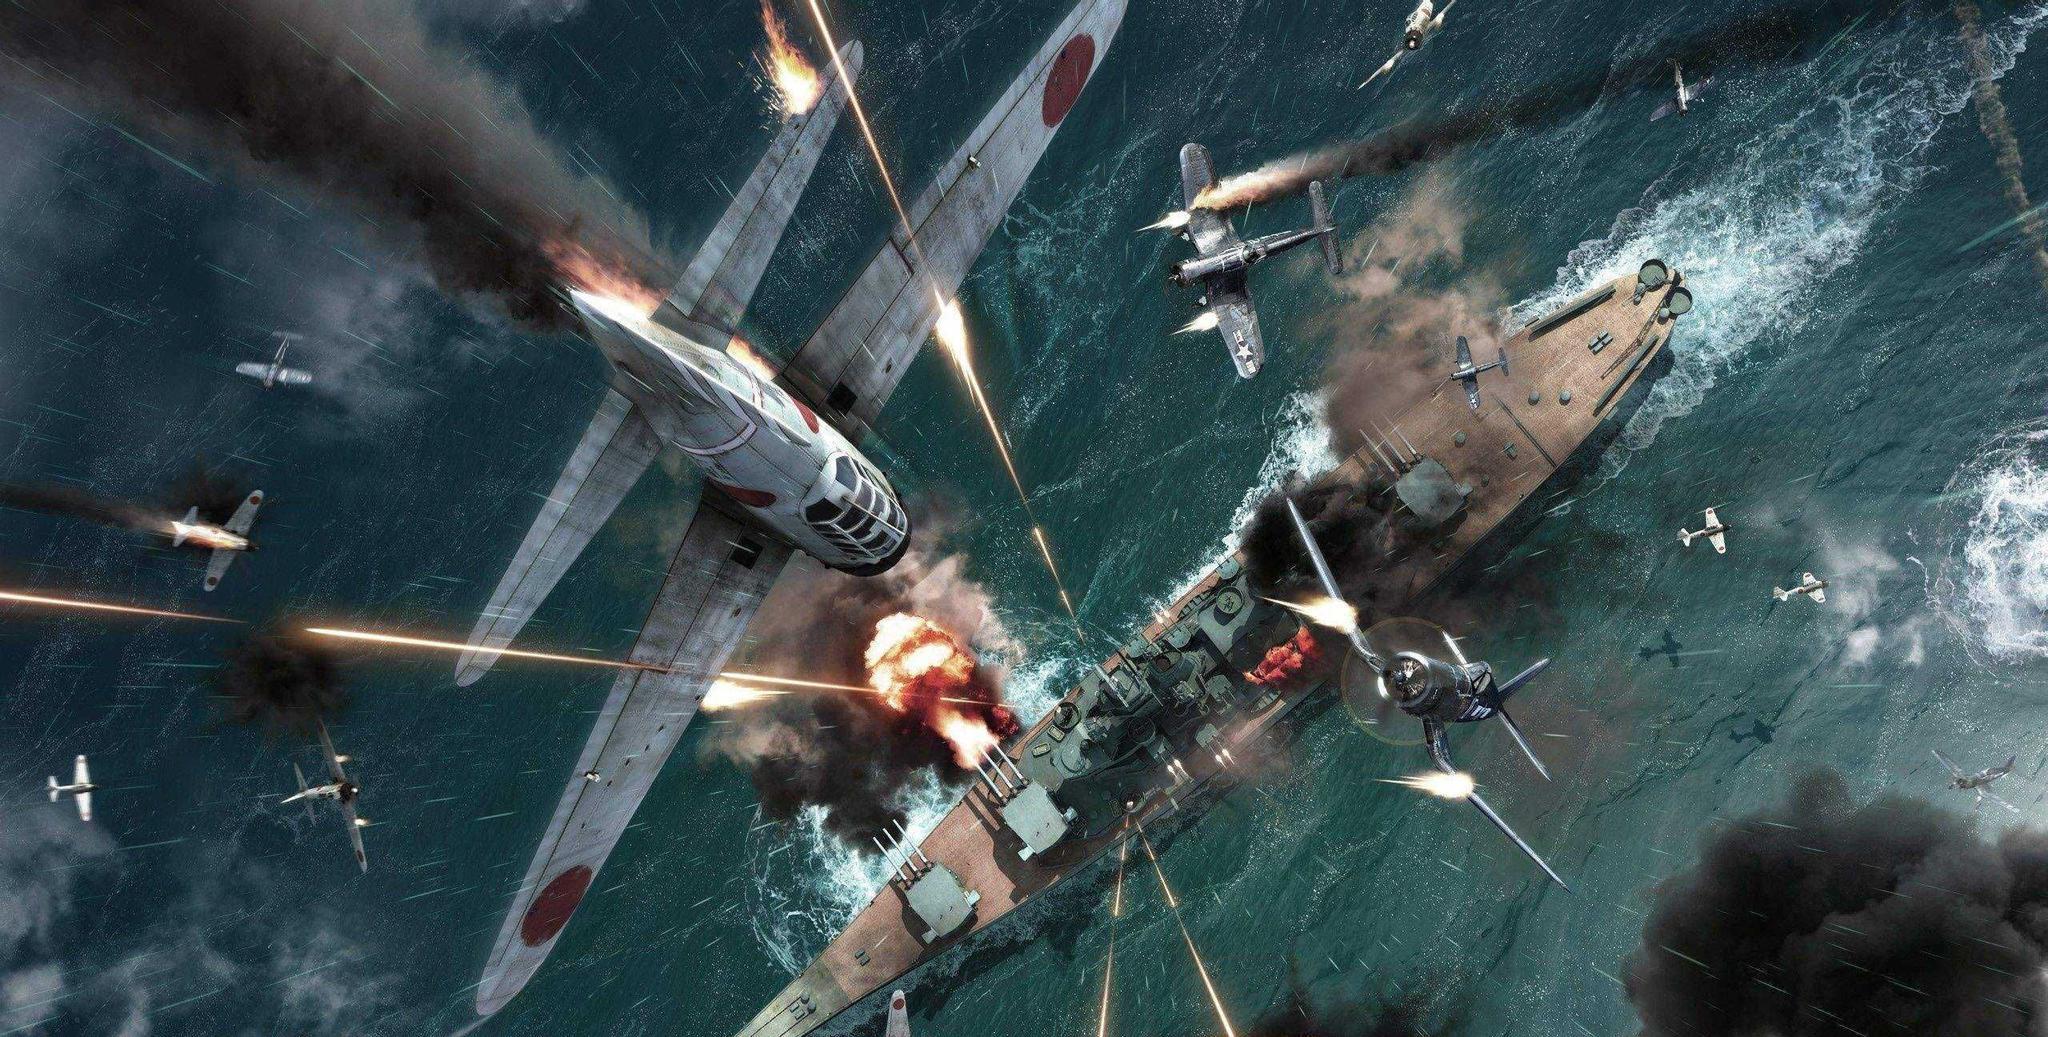 太平洋战争1:日本偷袭珍珠港,350战机轰炸90分钟为何留下败笔?